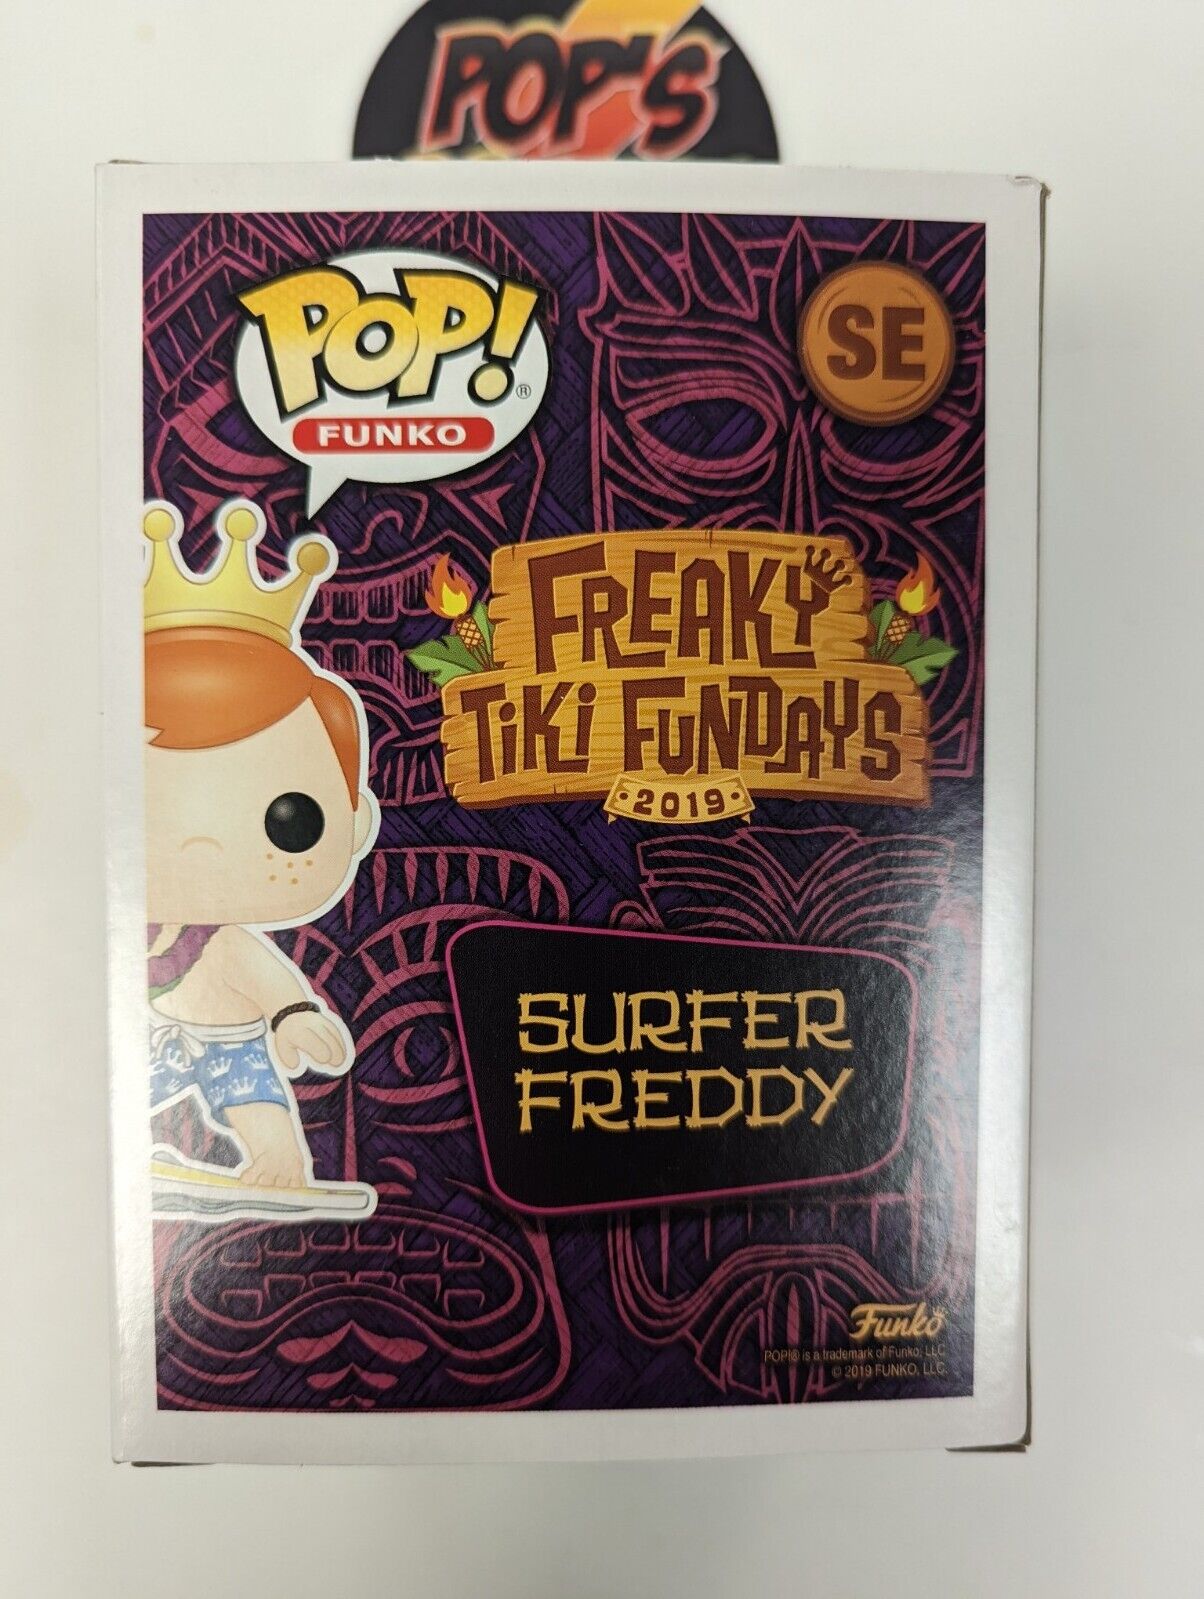 Funko Pop Surfer Freddy SE Box Of Fun 2019 6000 Pieces